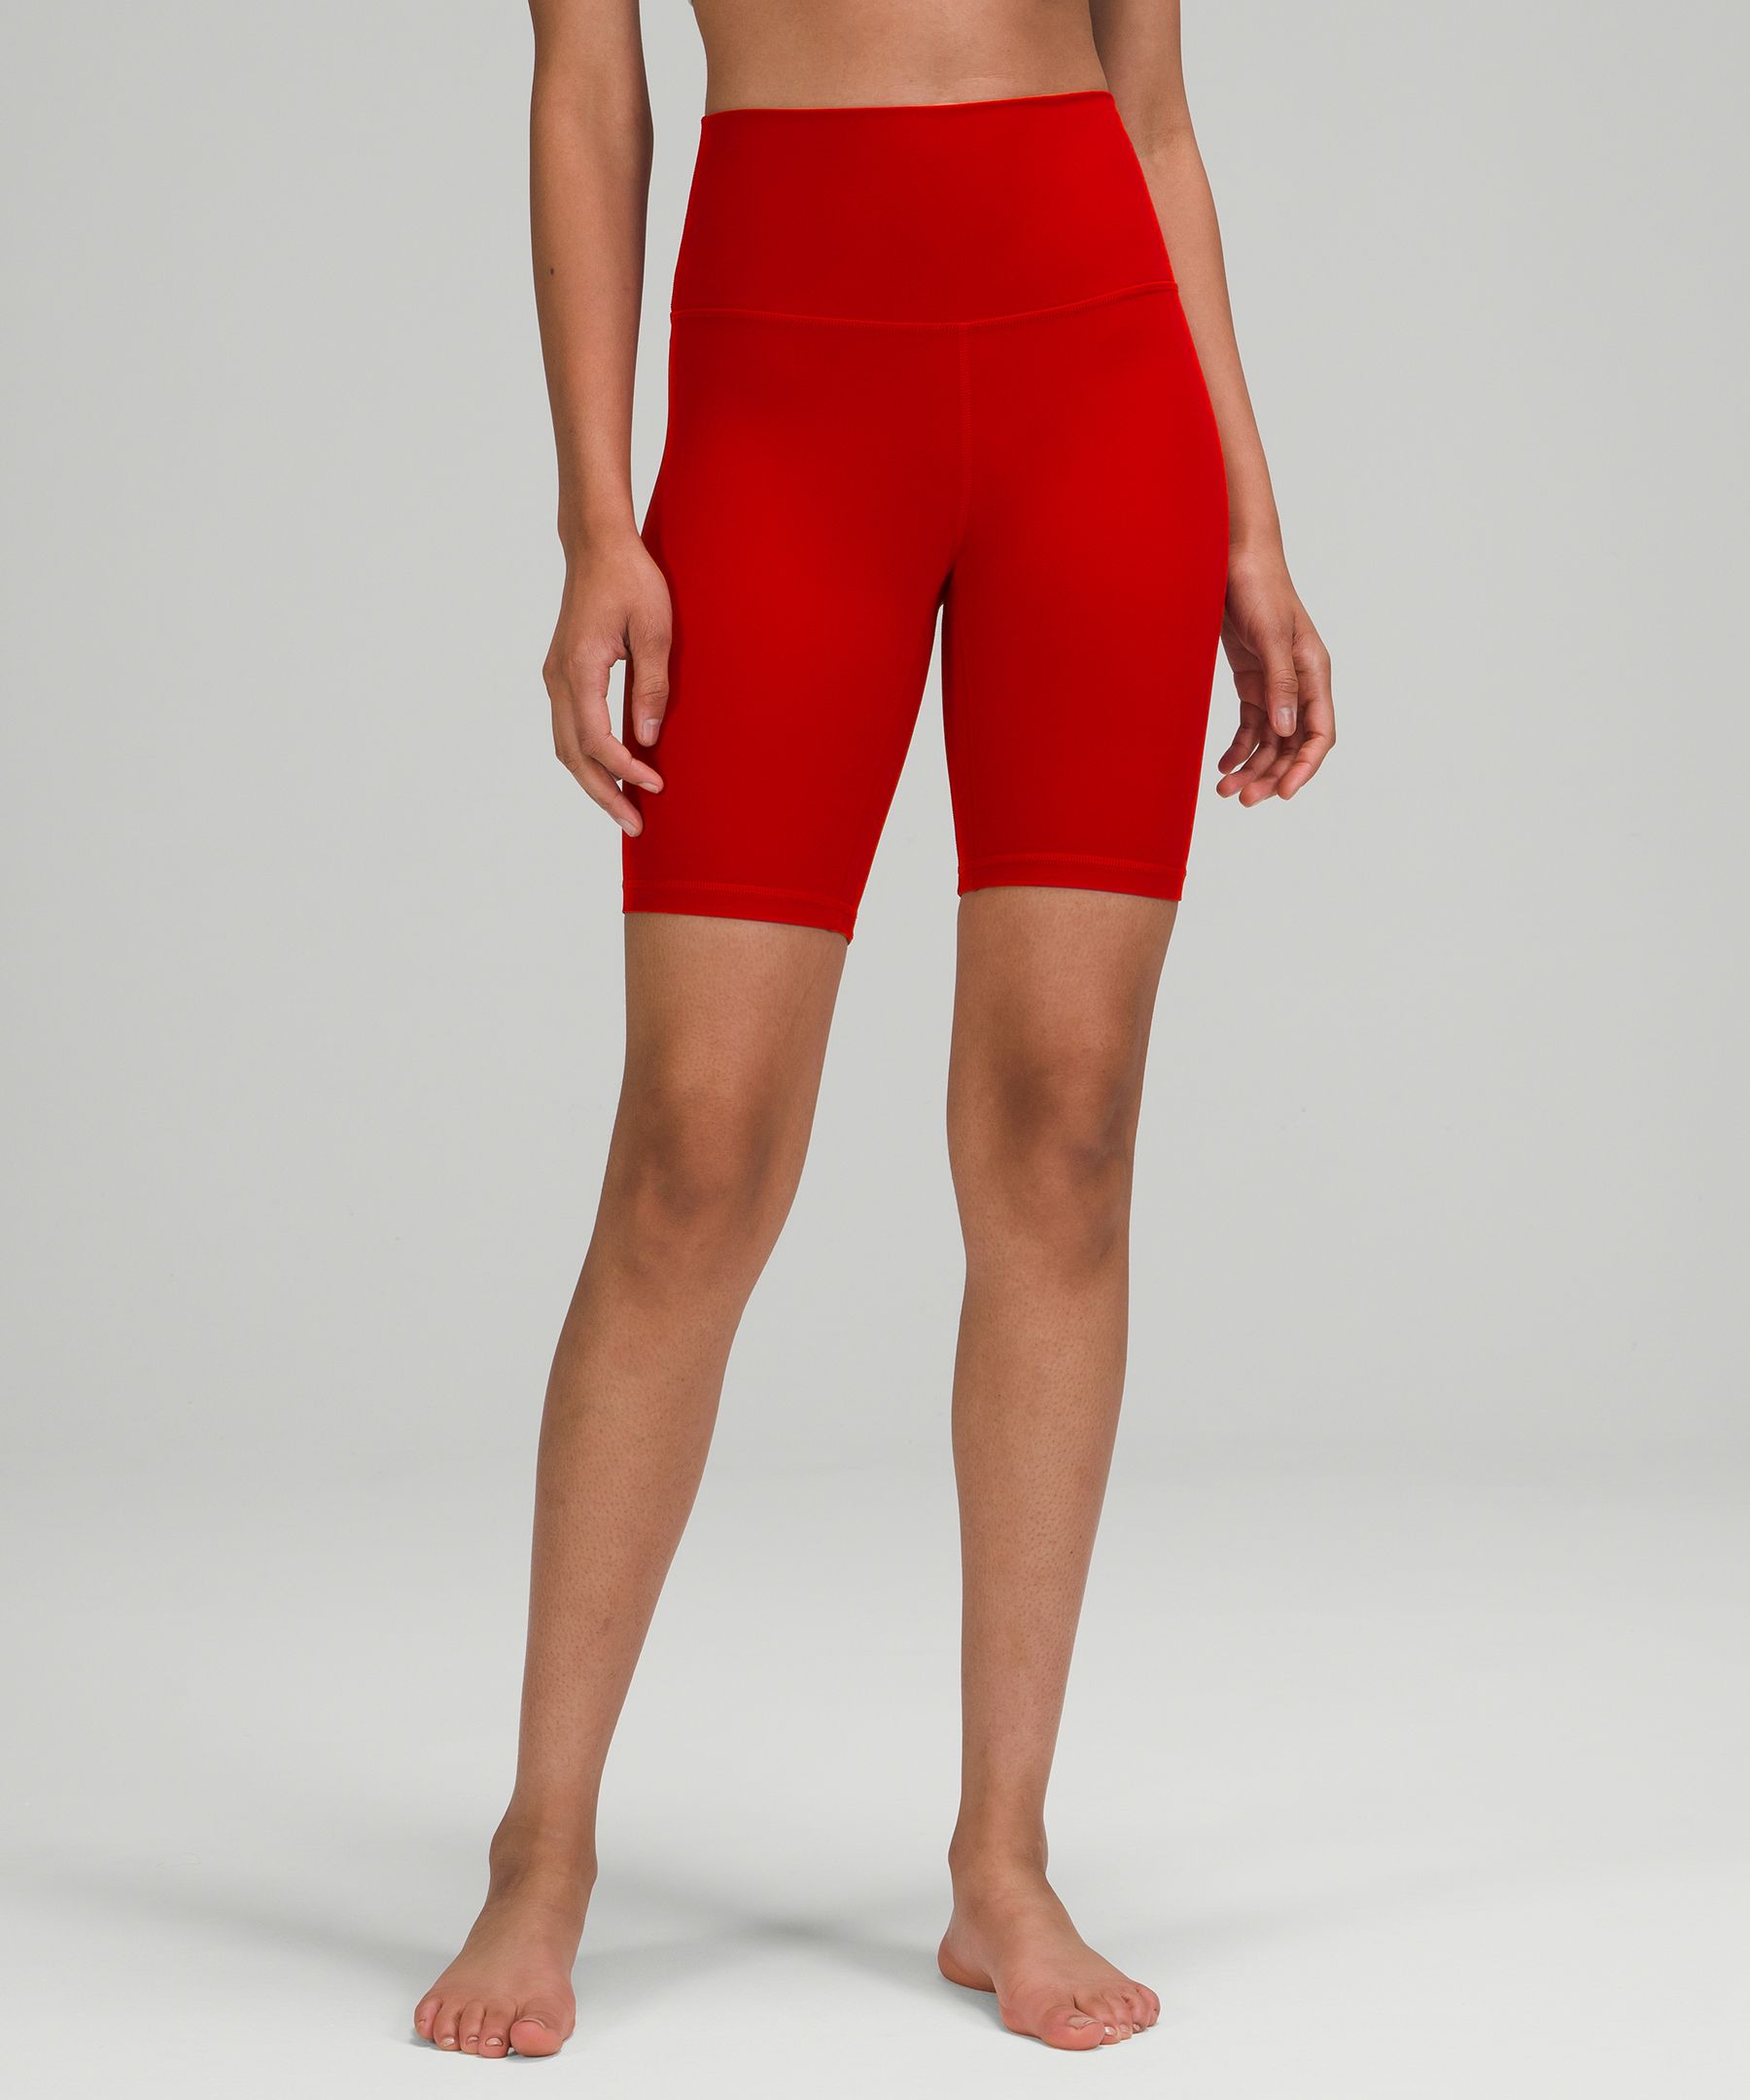 Lululemon Align™ High-rise Shorts 8" In Dark Red